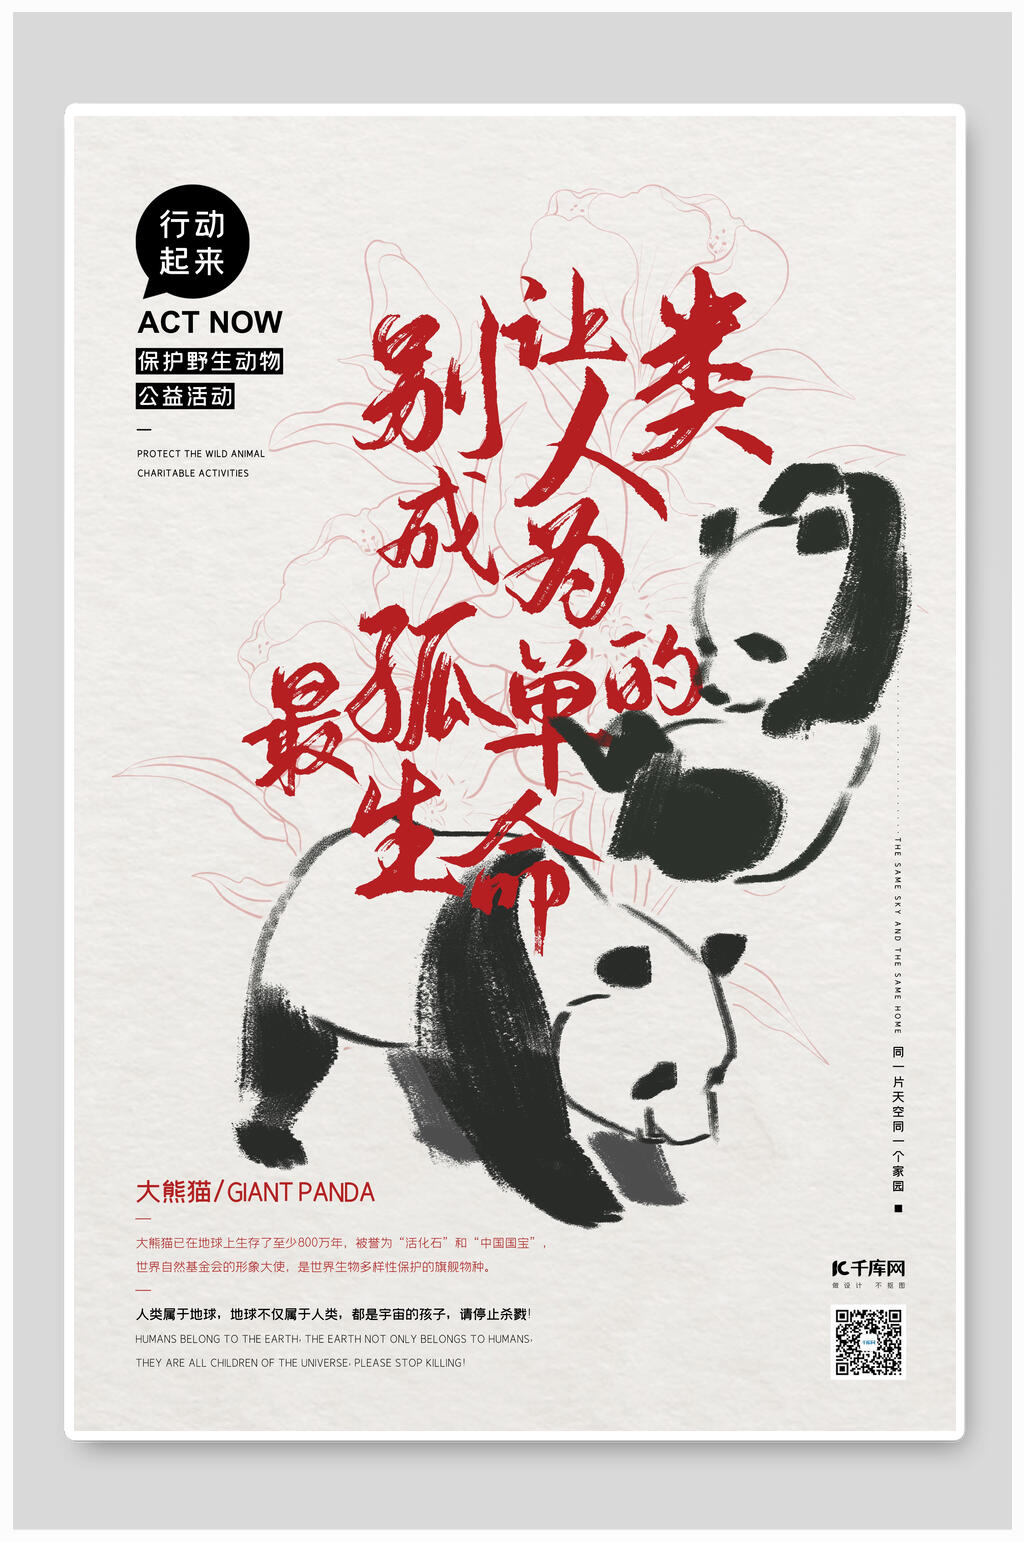 保护大熊猫的宣传语图片